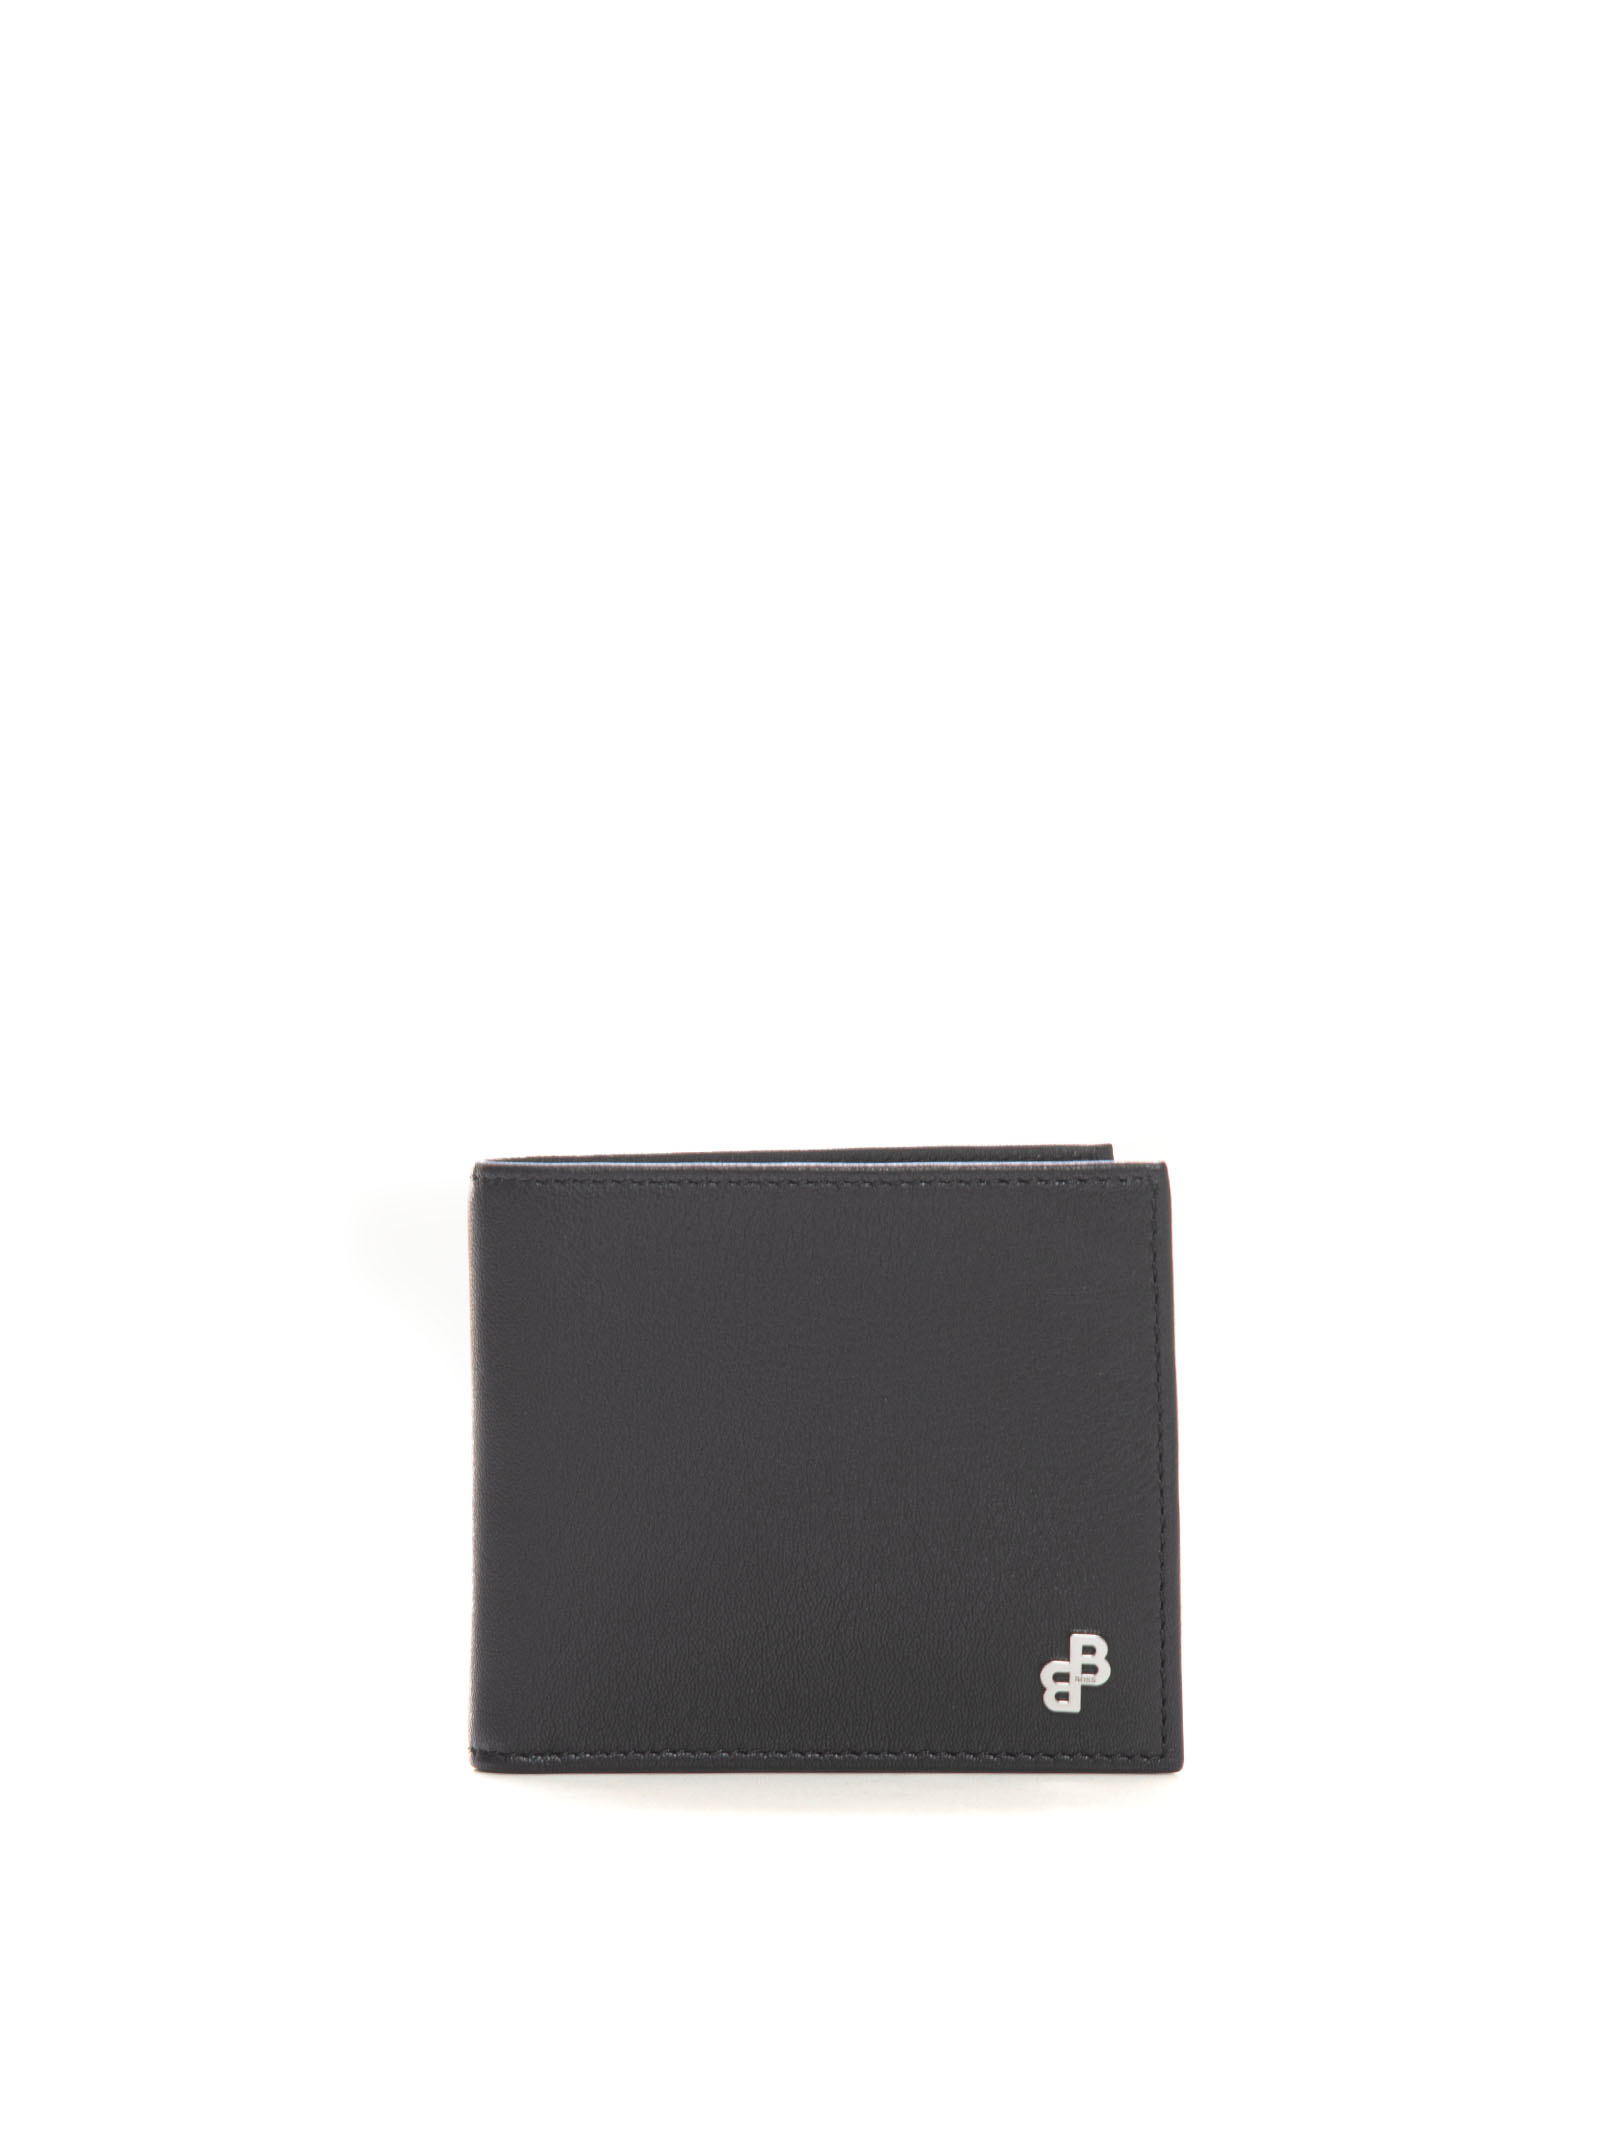 Hugo Boss Bradley Leather Wallet In Black